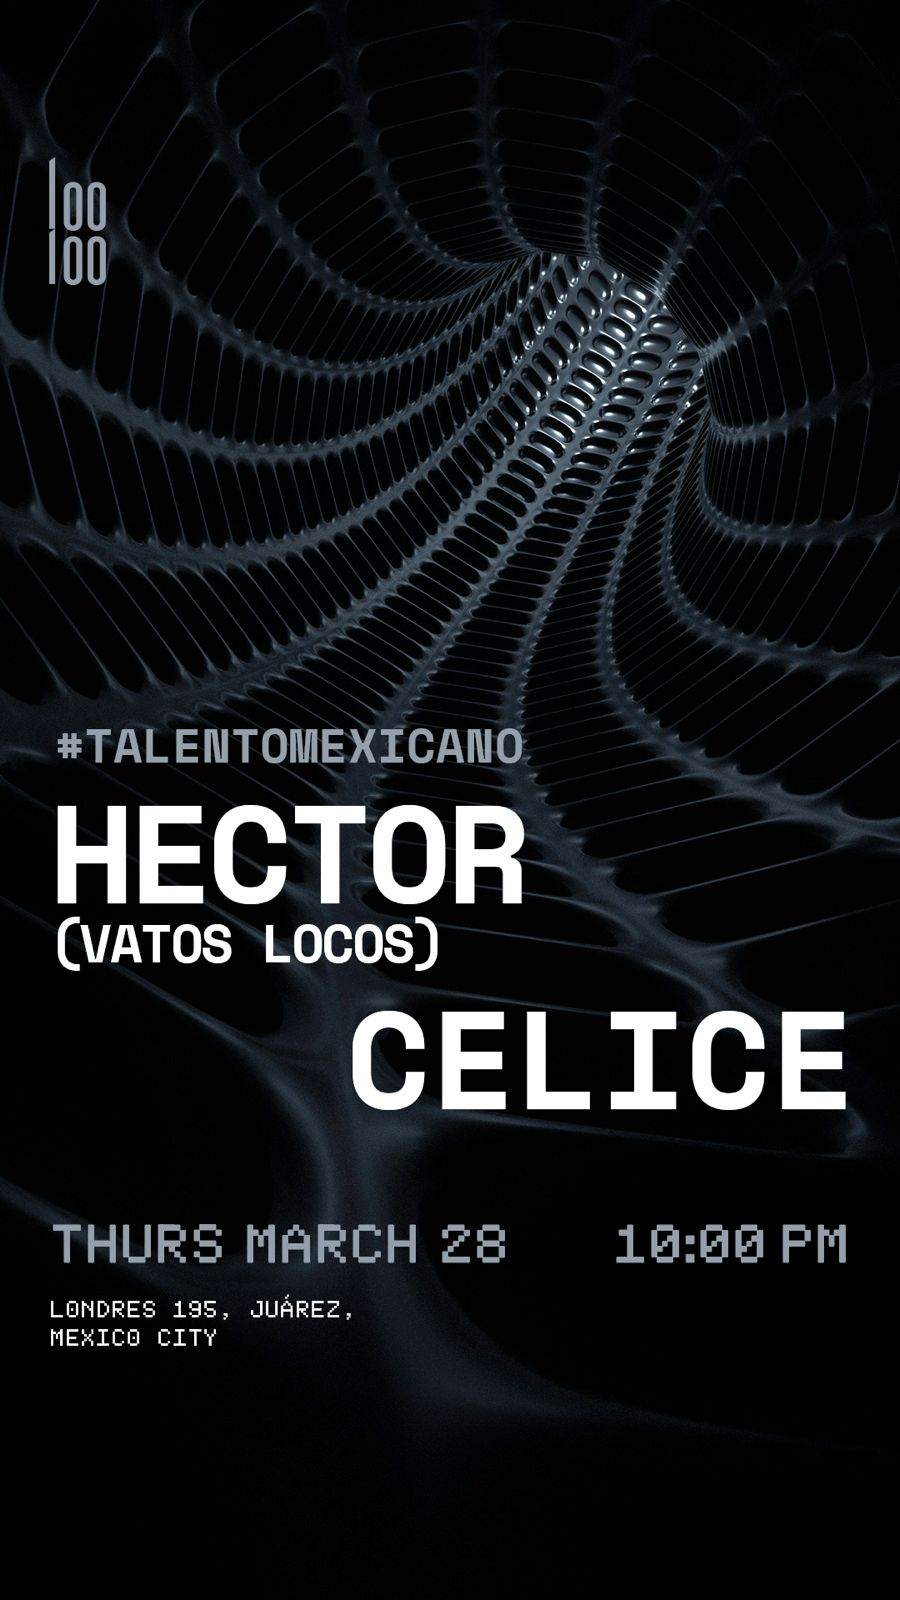 Hector/CELICE - Página frontal